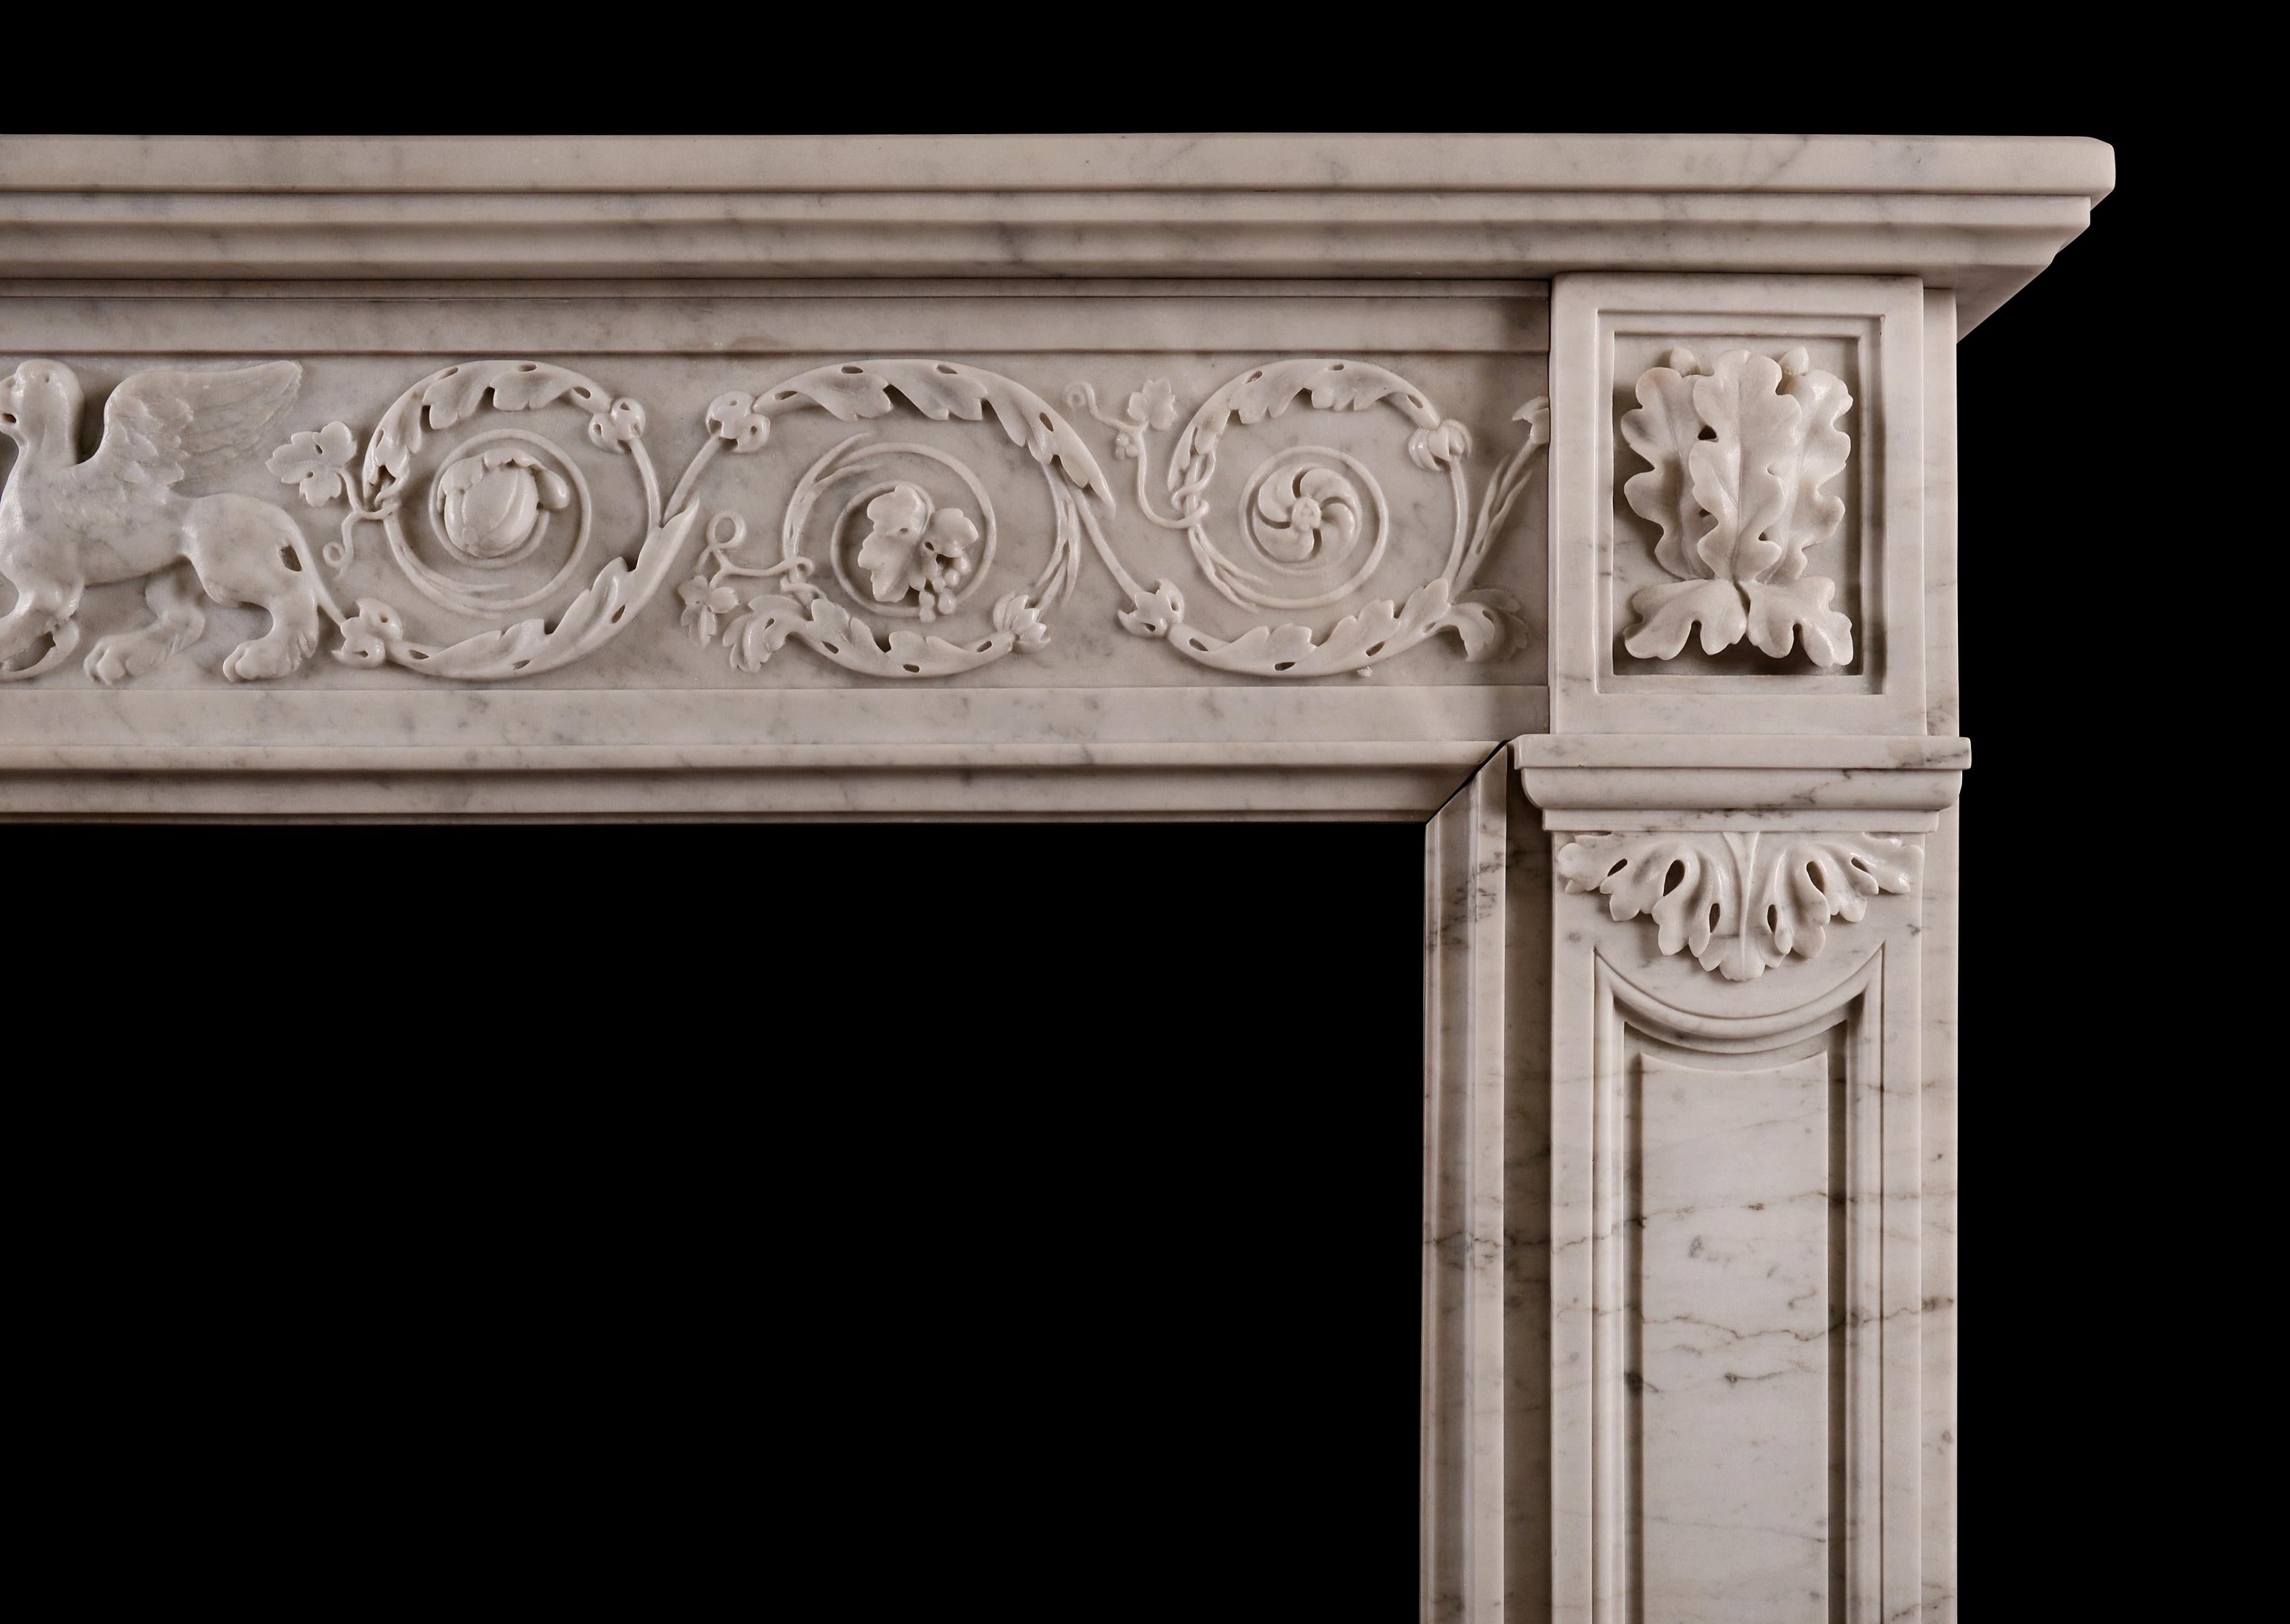 Une cheminée française de style Louis XVI en marbre de Carrare. La frise est ornée de feuillages sculptés et de pateras tourbillonnants, avec des bêtes ailées et une urne au centre. Les montants avec panneau façonné sont surmontés de blocs